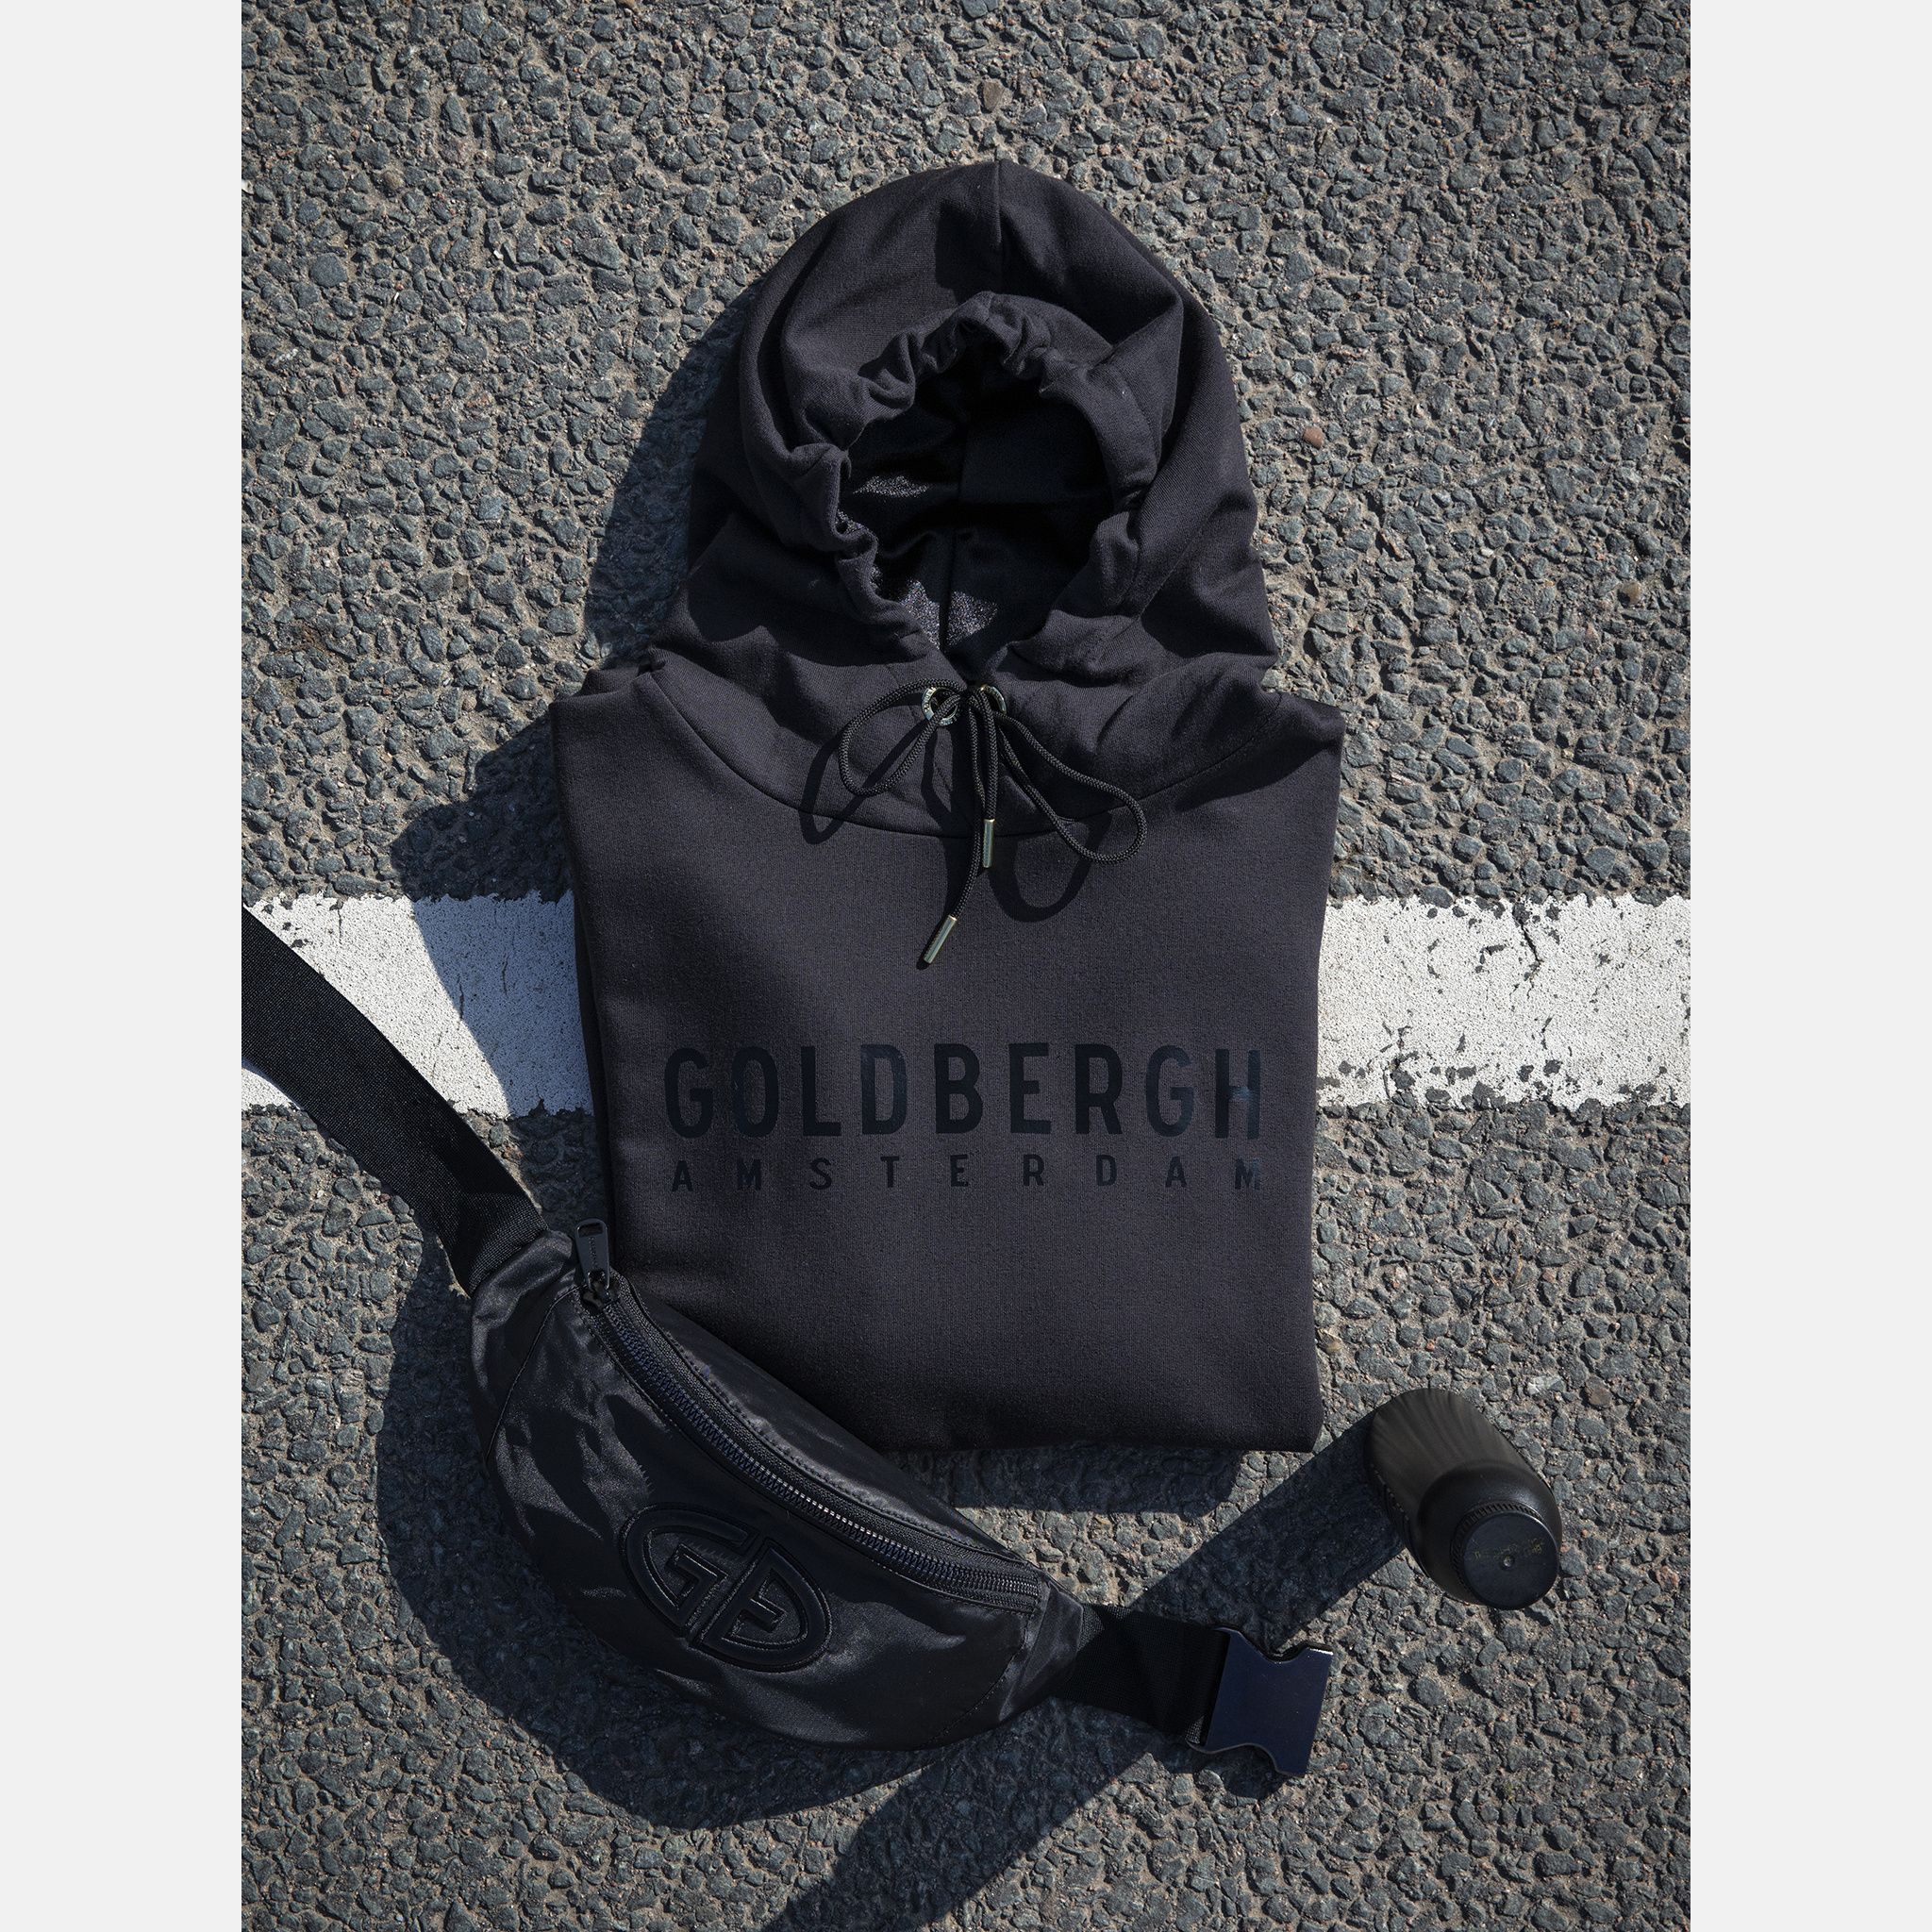 Hoodies -  goldbergh FLOANE longsleeve hooded top